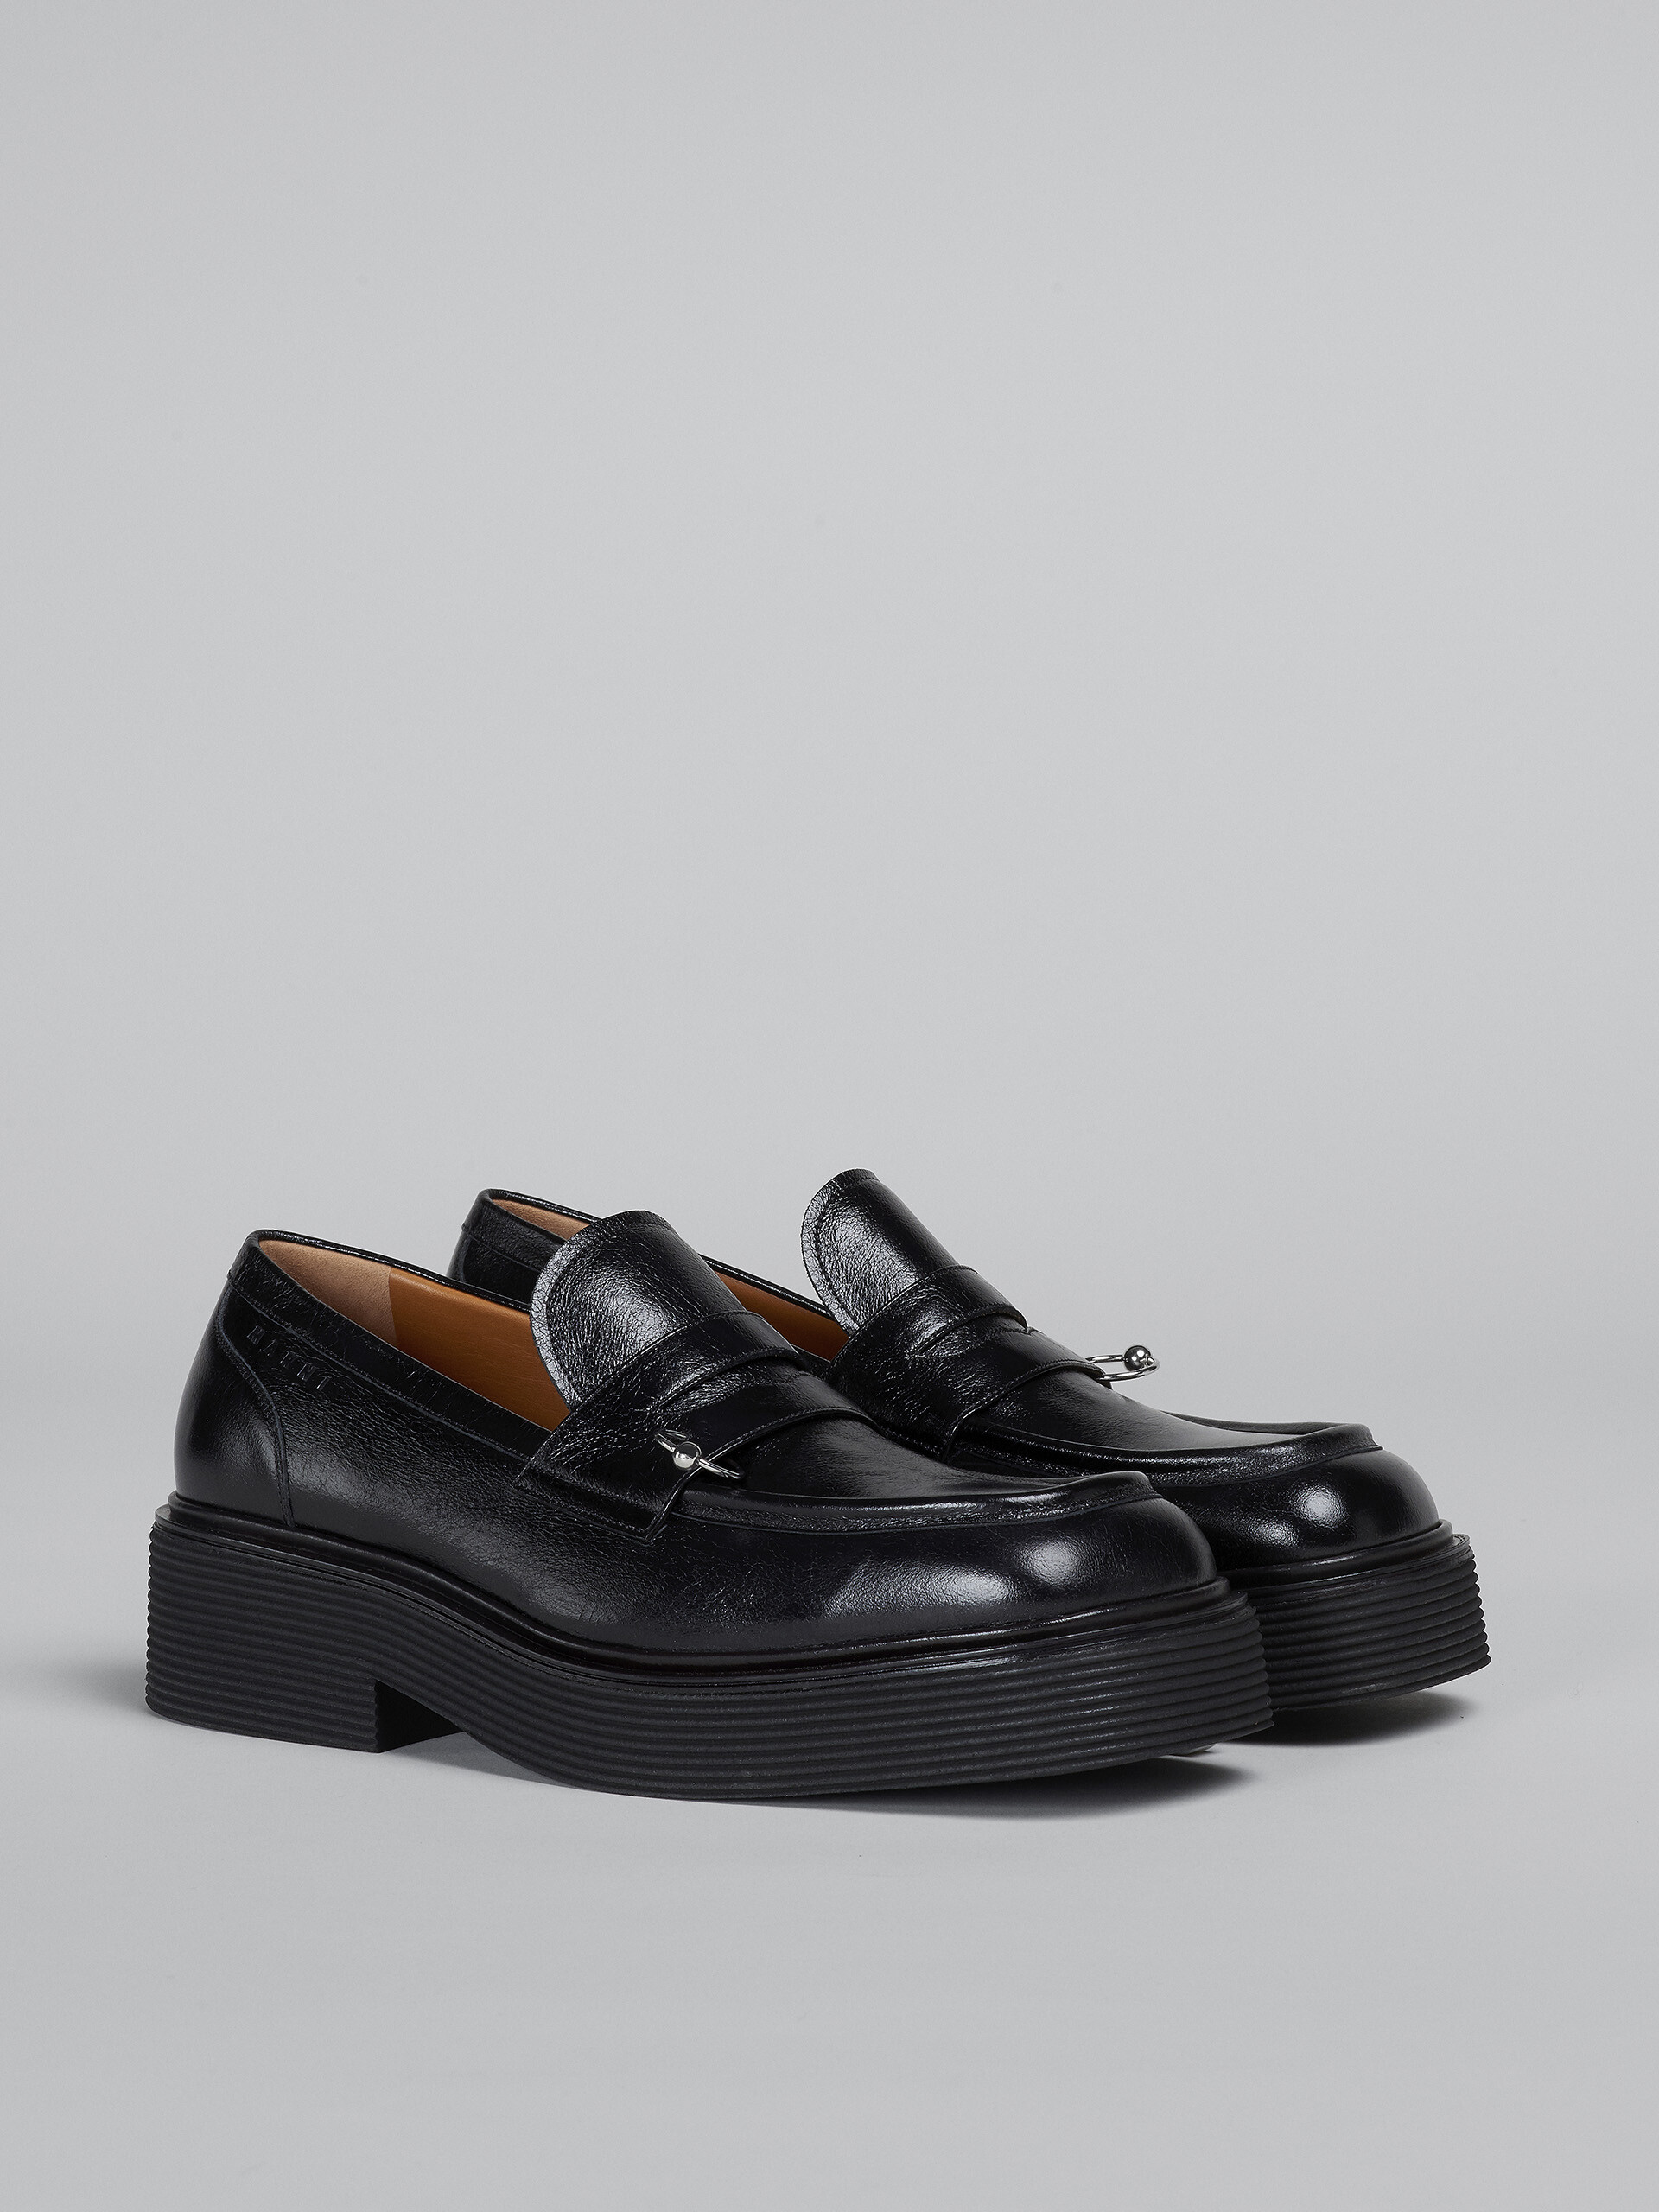 Mocassins en cuir brillant noir - Chaussures à Lacets - Image 2